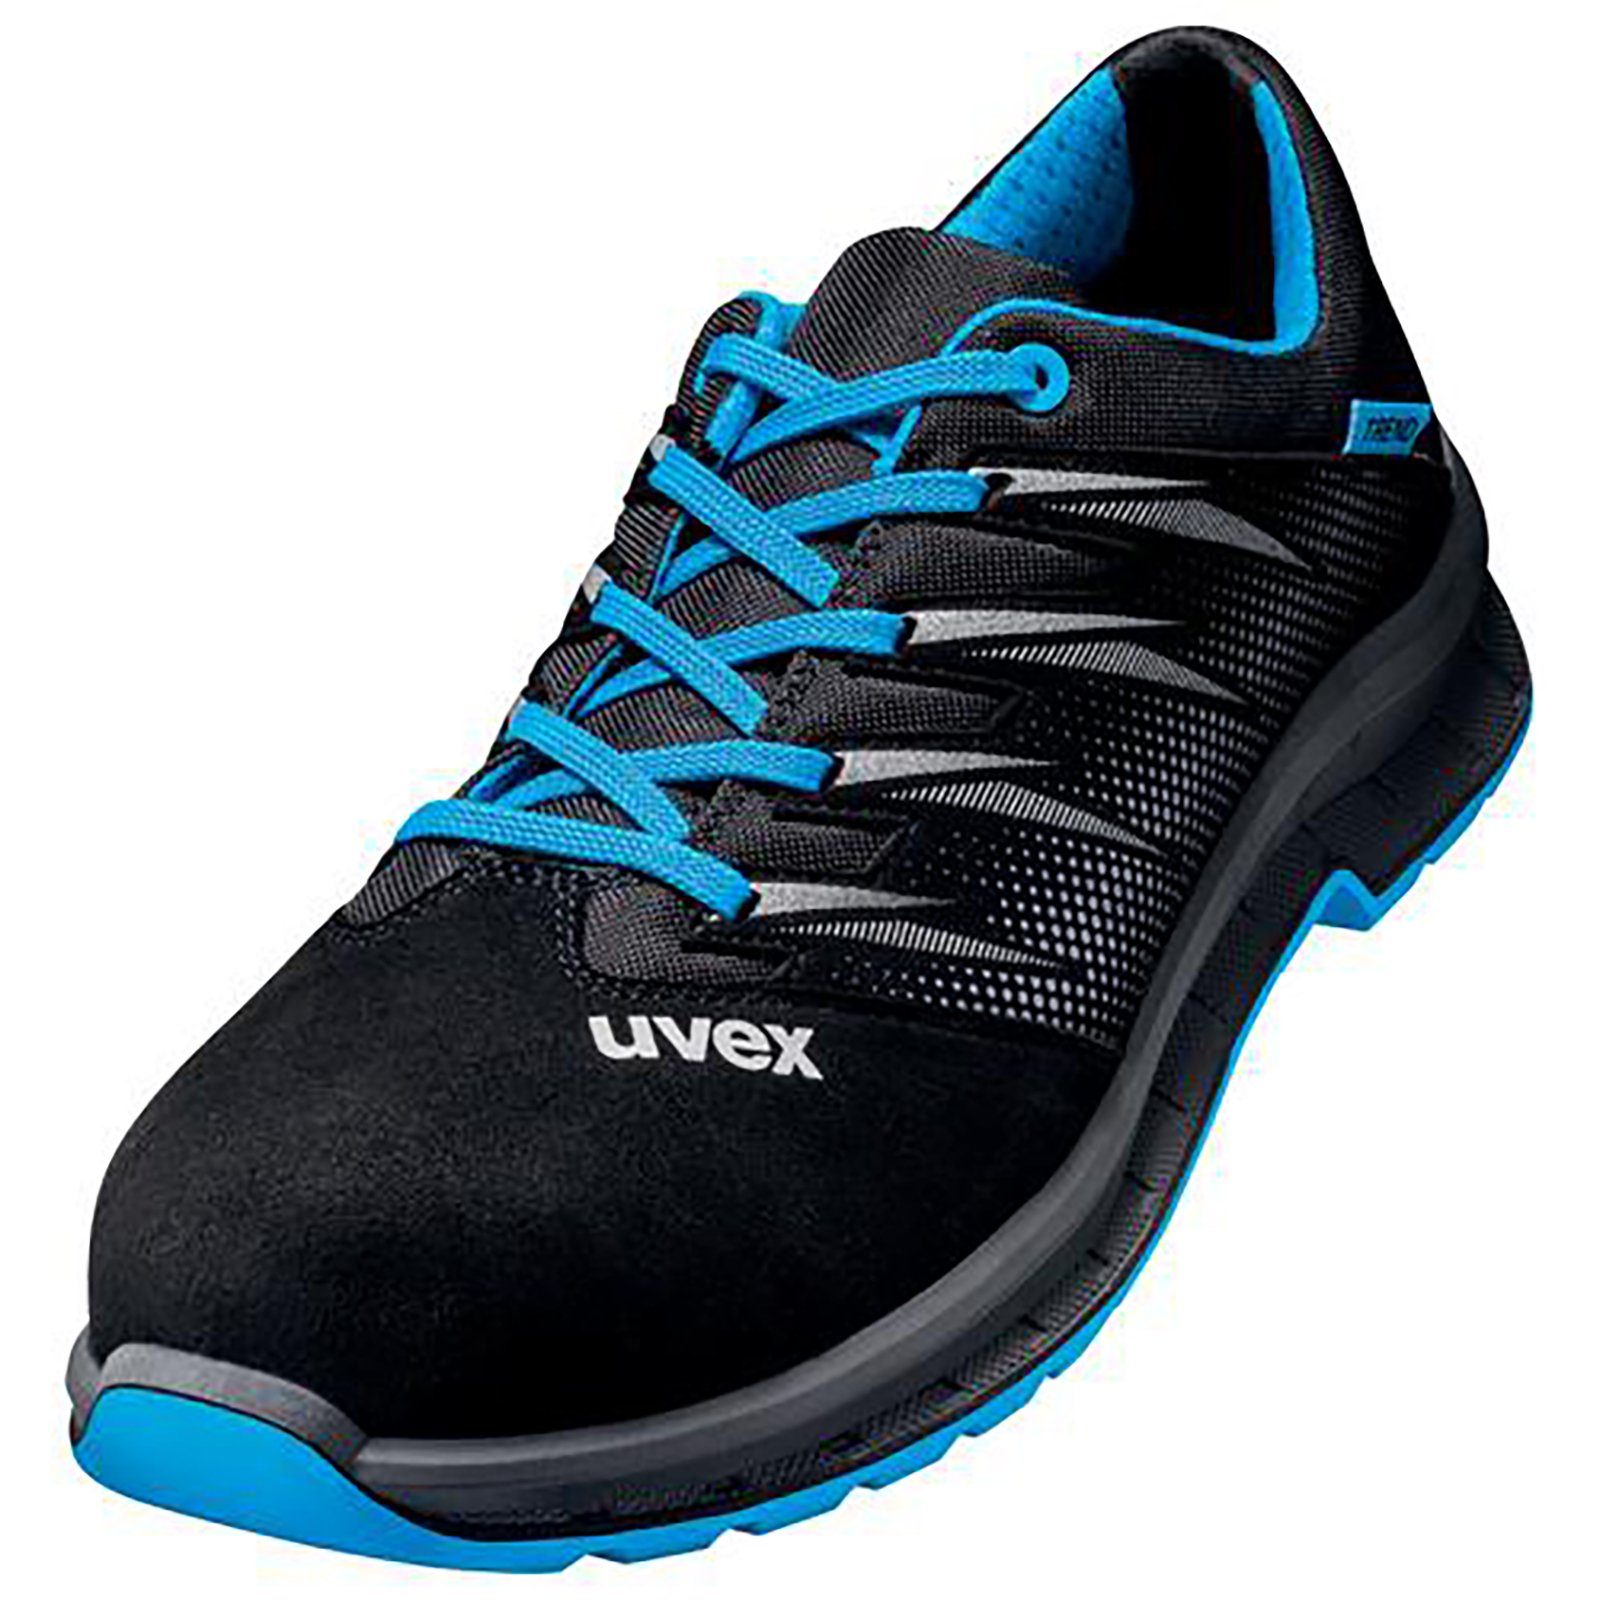 Uvex 2 trend Halbschuhe S2 blau, schwarz Weite 12 Sicherheitsschuh